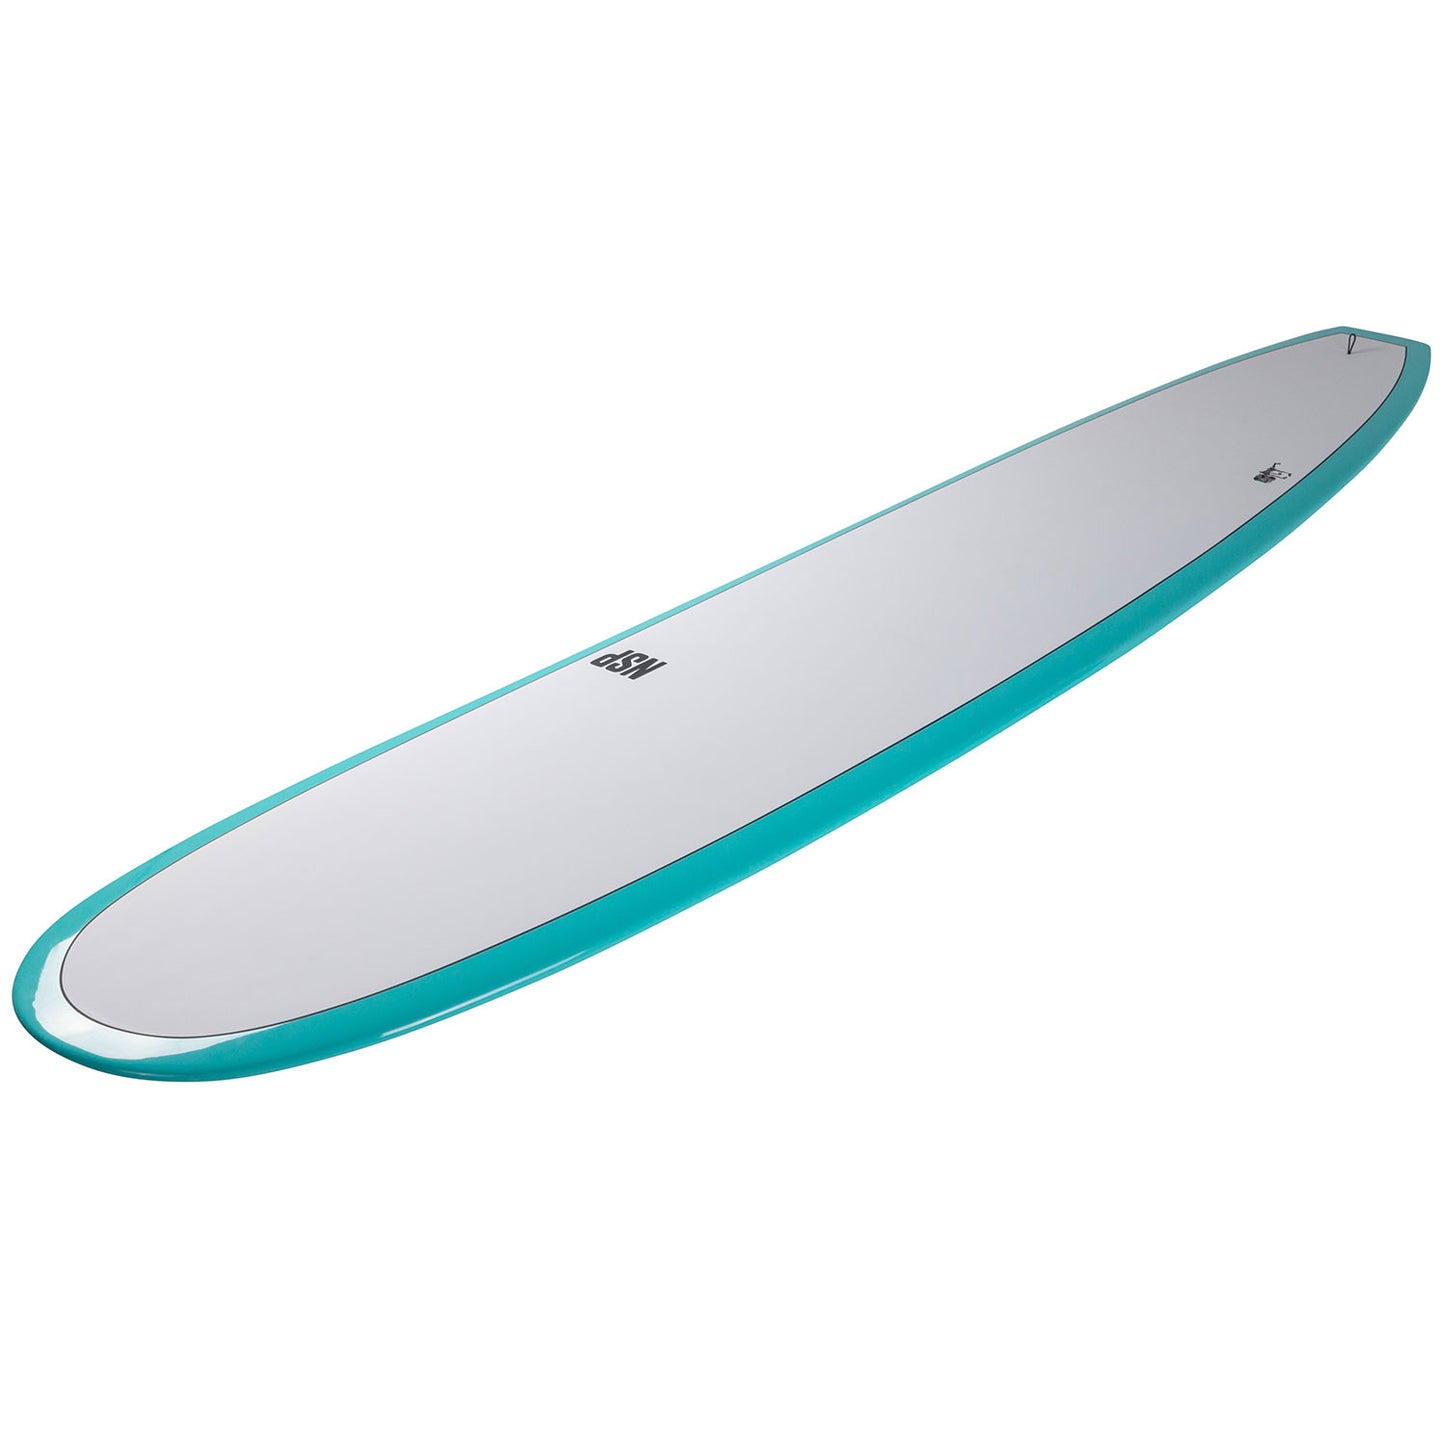 NSP-Elements-HDT-Sleepwalker-White-deck-surfboard-longboard-tully-st-john-galway-ireland-blacksheepsurfco-NSP-sleep-walker-sea-mist-longboard-surfbord-10-inch-fin-galway-ireland-blacksheepsurfco